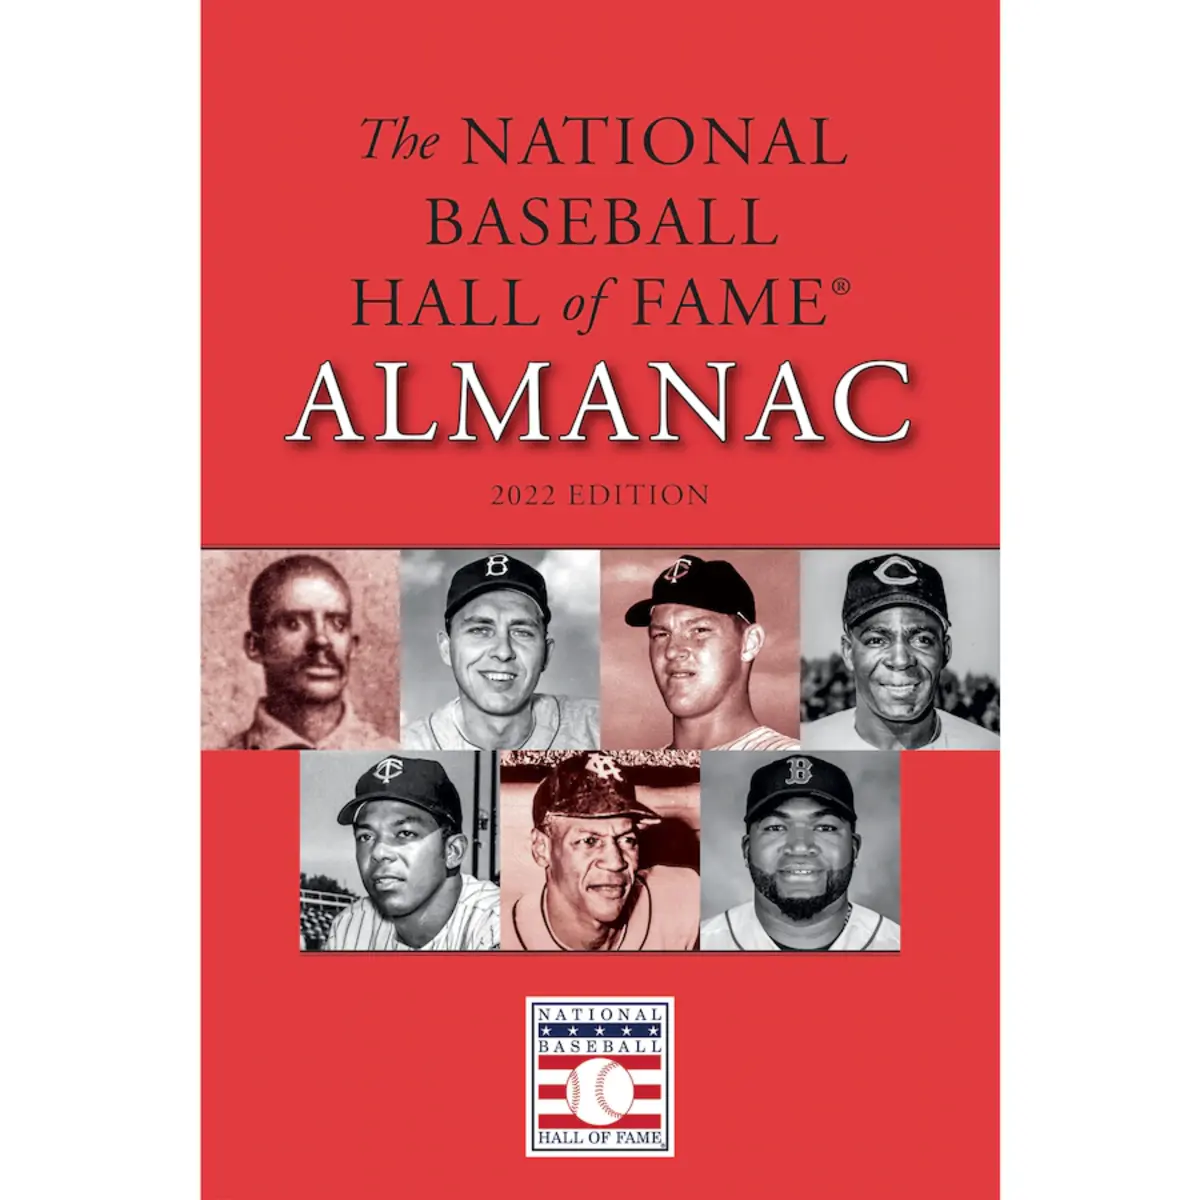 The National Baseball Hall of Fame Almanac 2022.